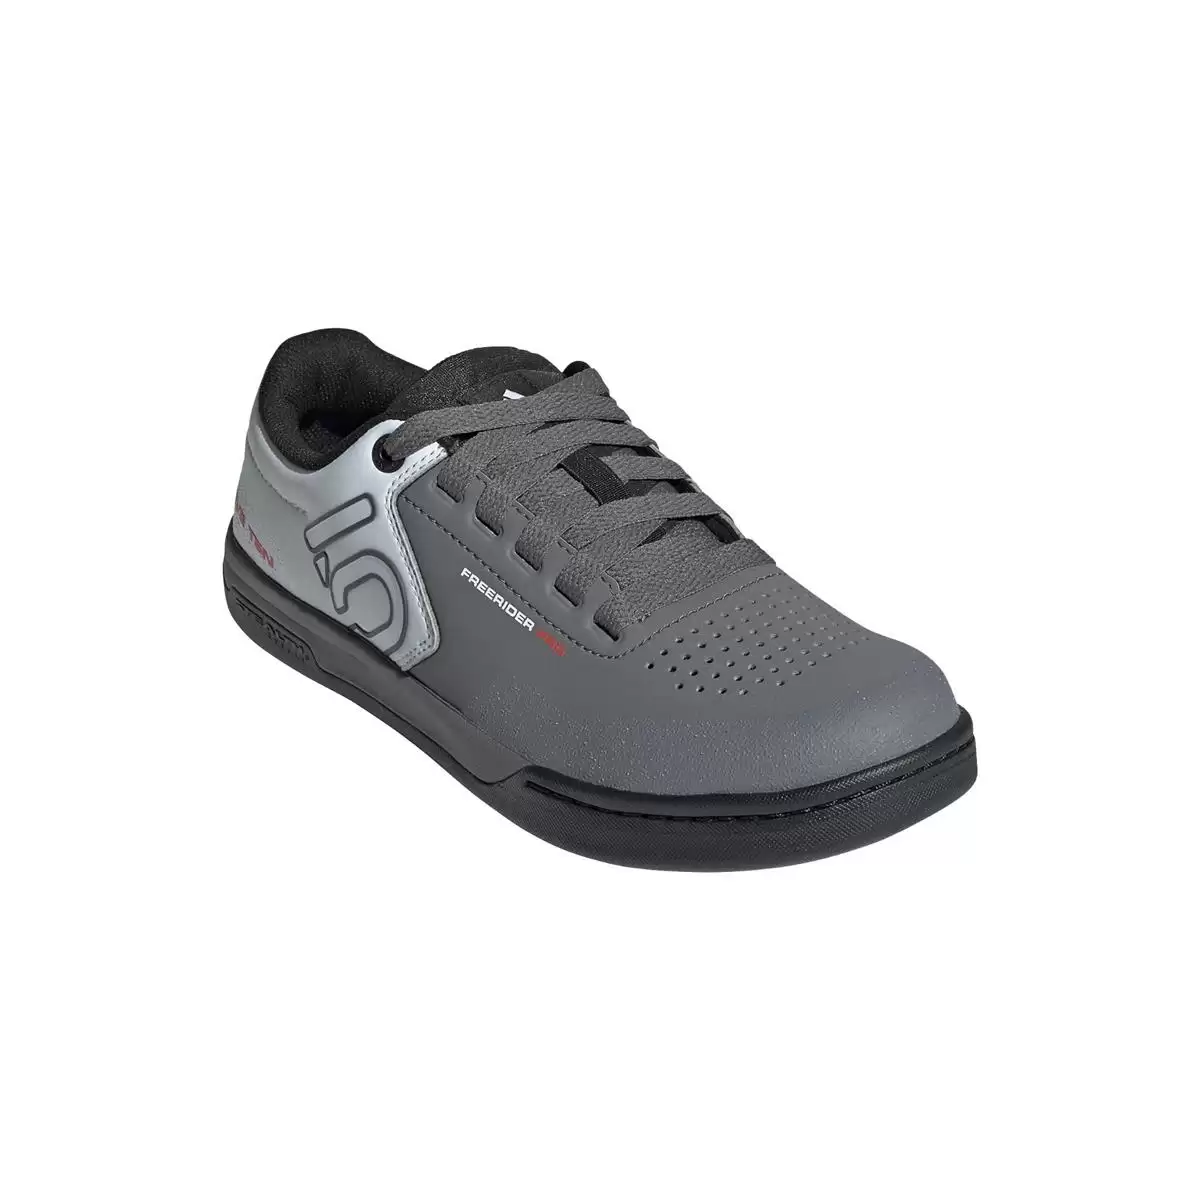 MTB Flache Schuhe Freerider Pro Weiß/Grau Größe 39 #1